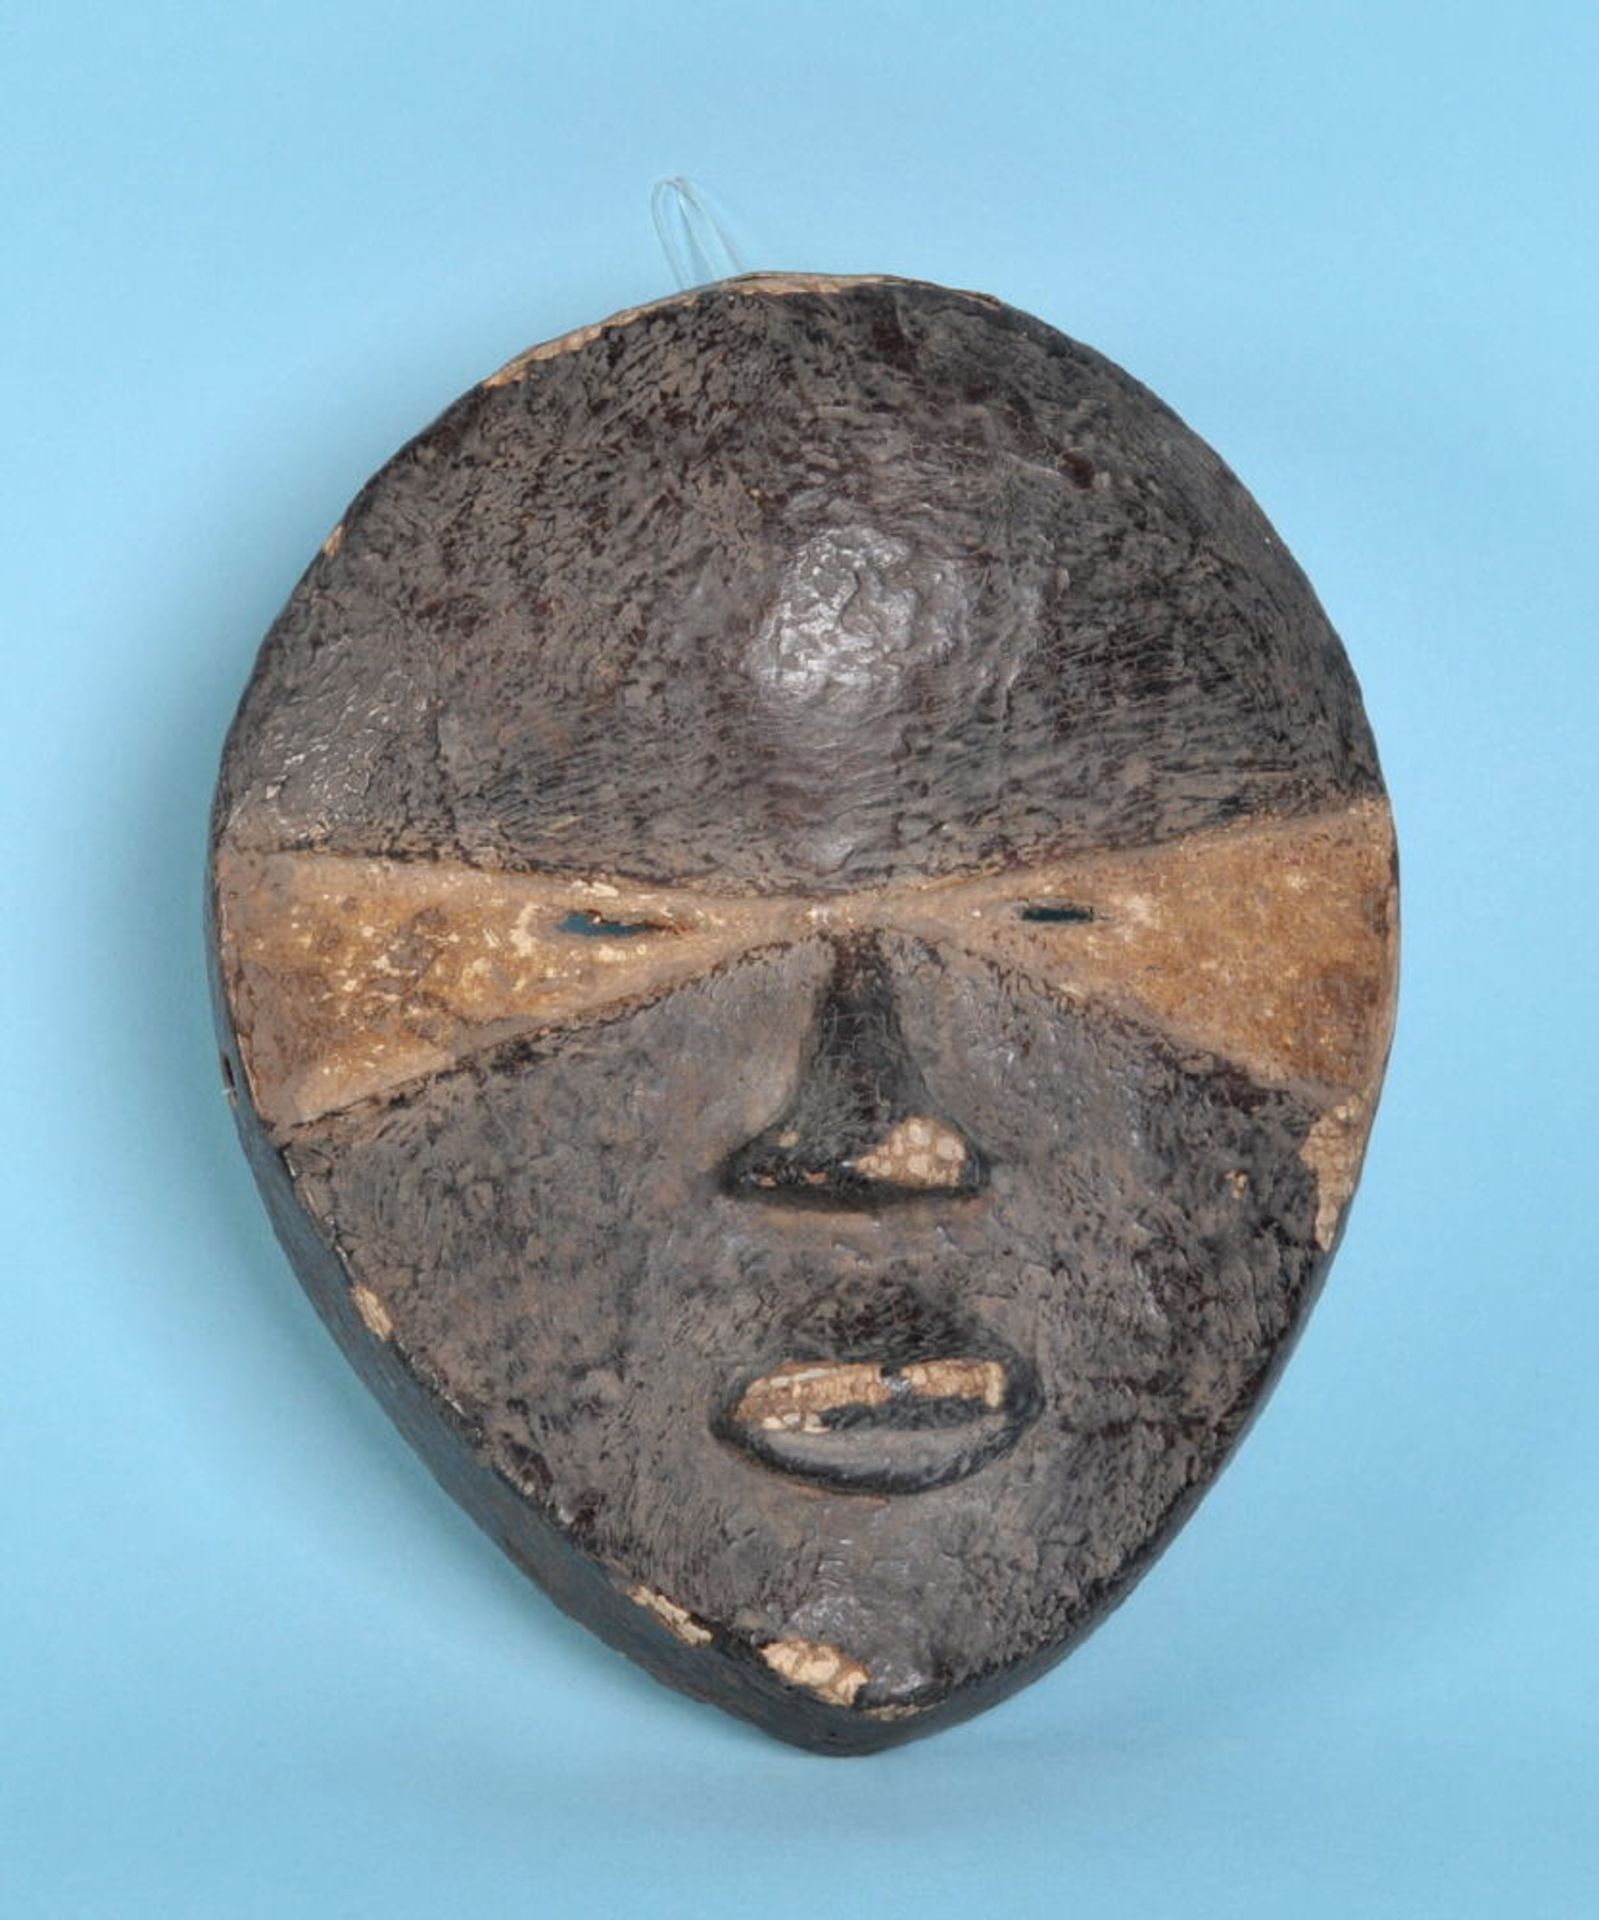 Afrikanische KultmaskeHolz, braun gebeizt, H= 20,5 cm, D.R. Kongo